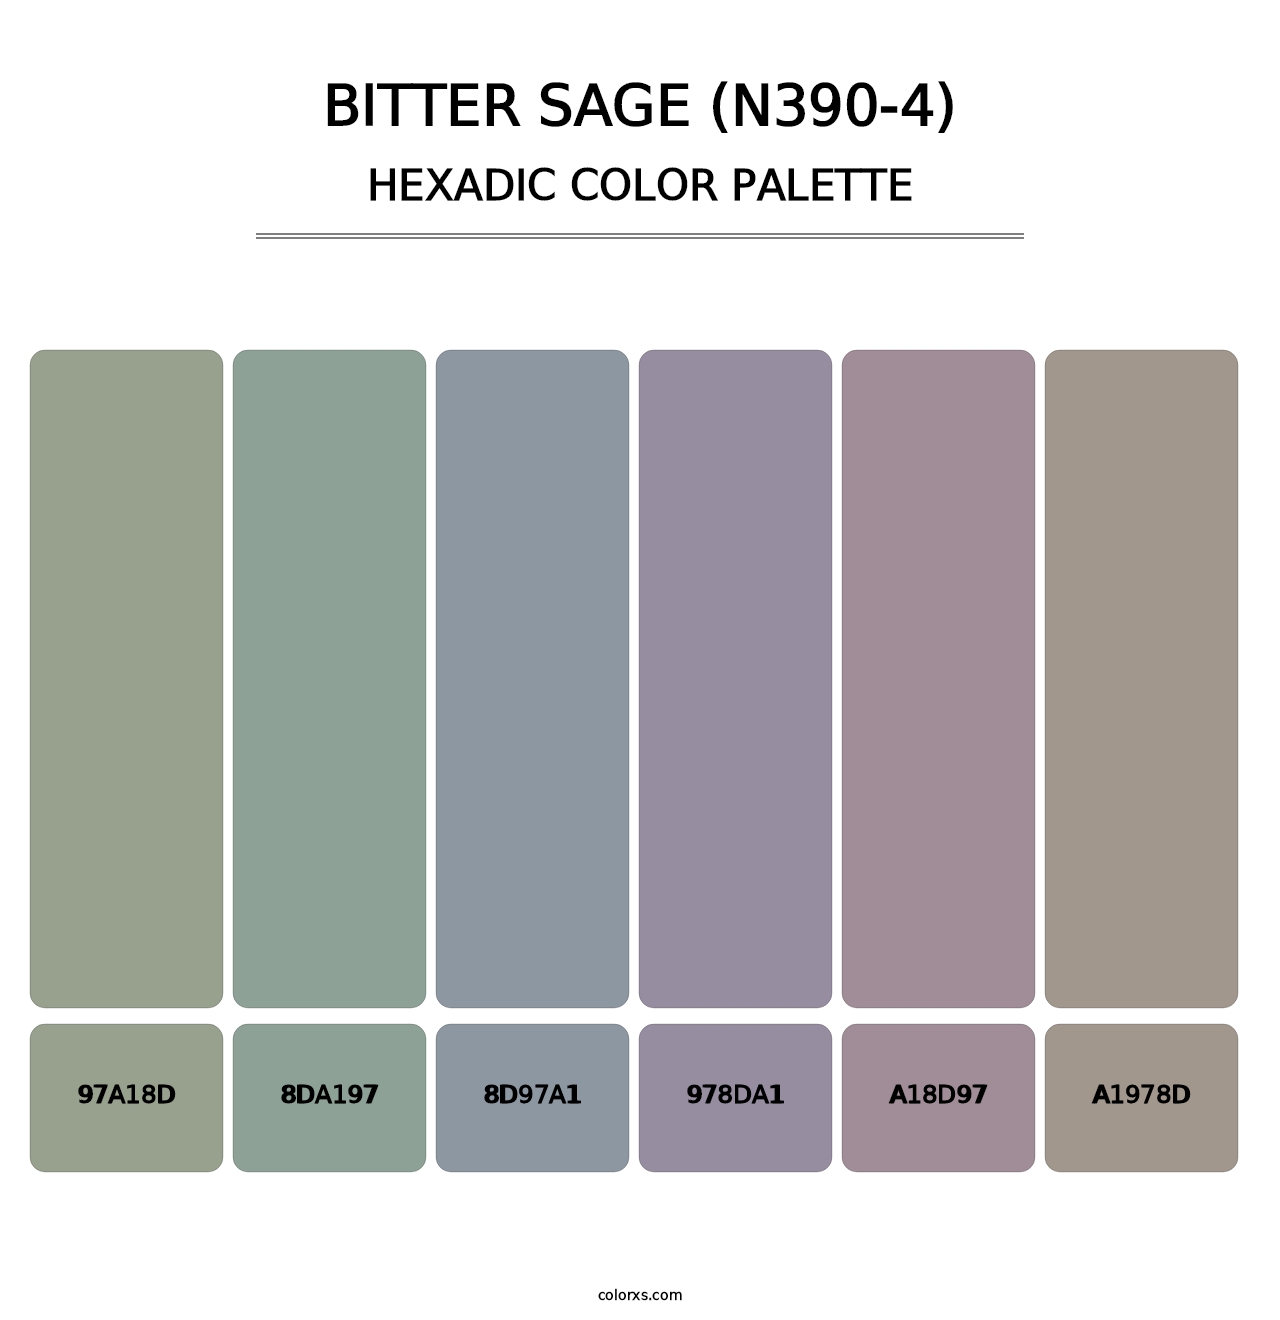 Bitter Sage (N390-4) - Hexadic Color Palette